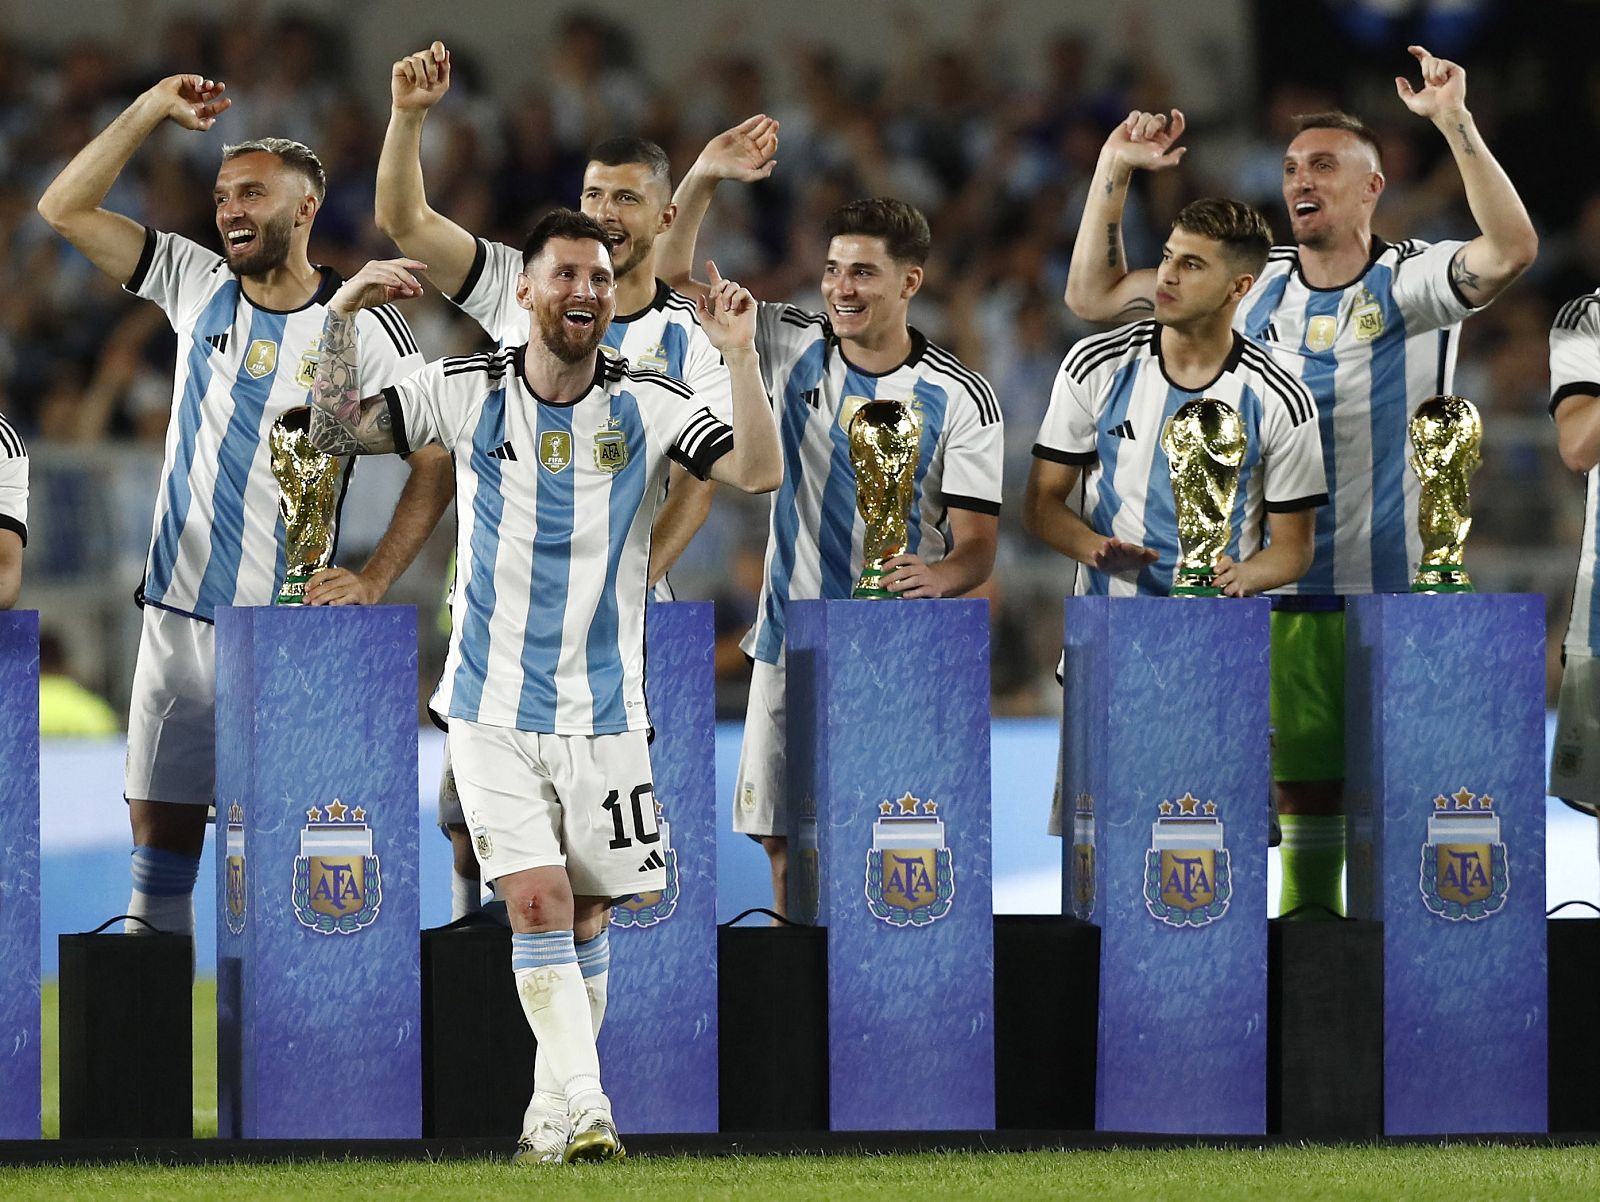 Los 'muchachos' se vuelven a ilusionar en una fiesta donde Messi marc� su gol 800